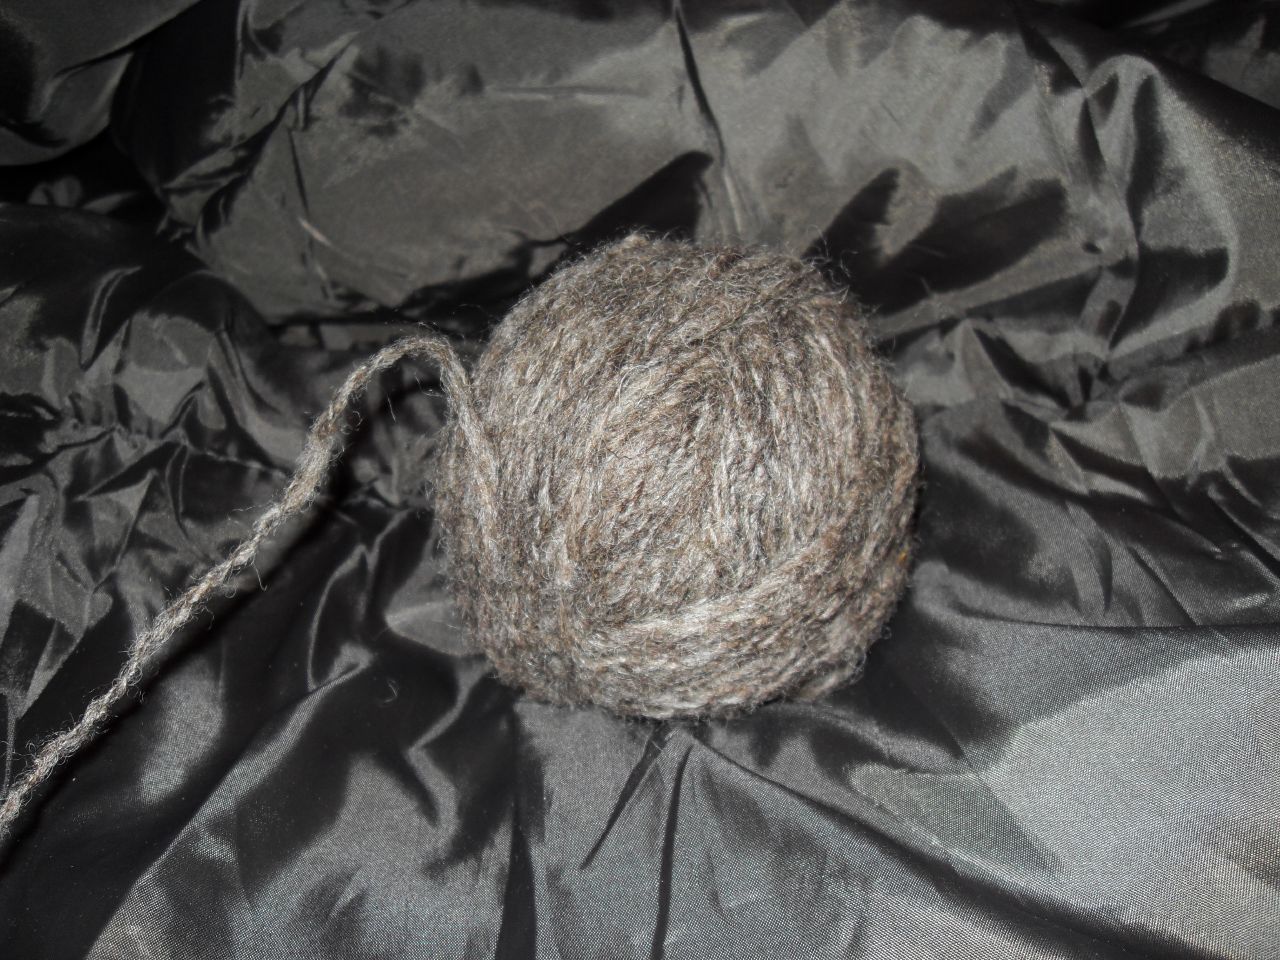 sheep wool in ball